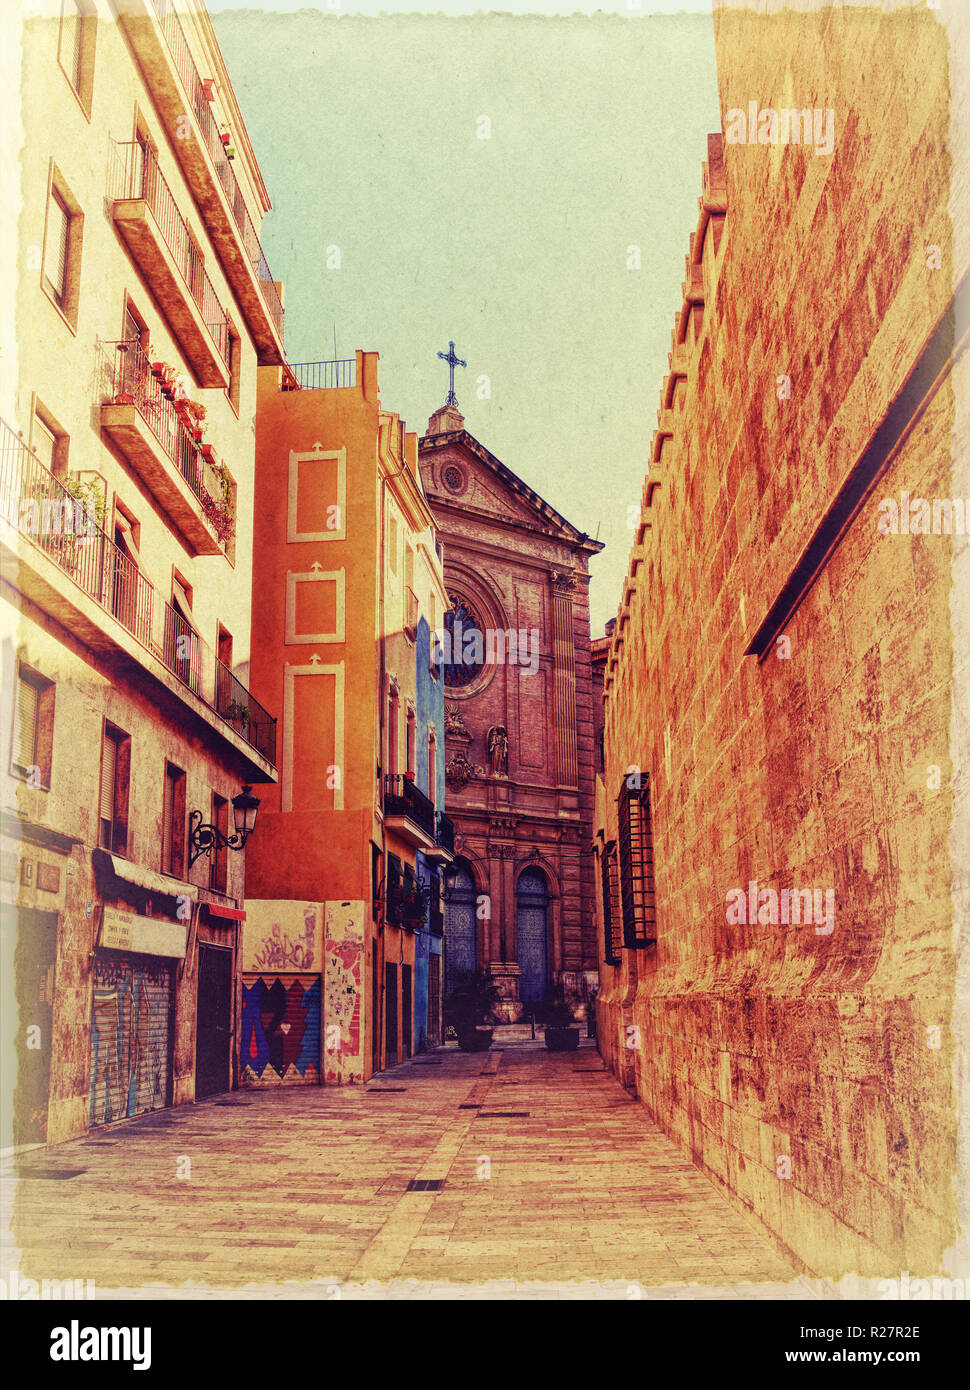 Angosta calle española. Foto en el viejo estilo de imagen. Foto de stock